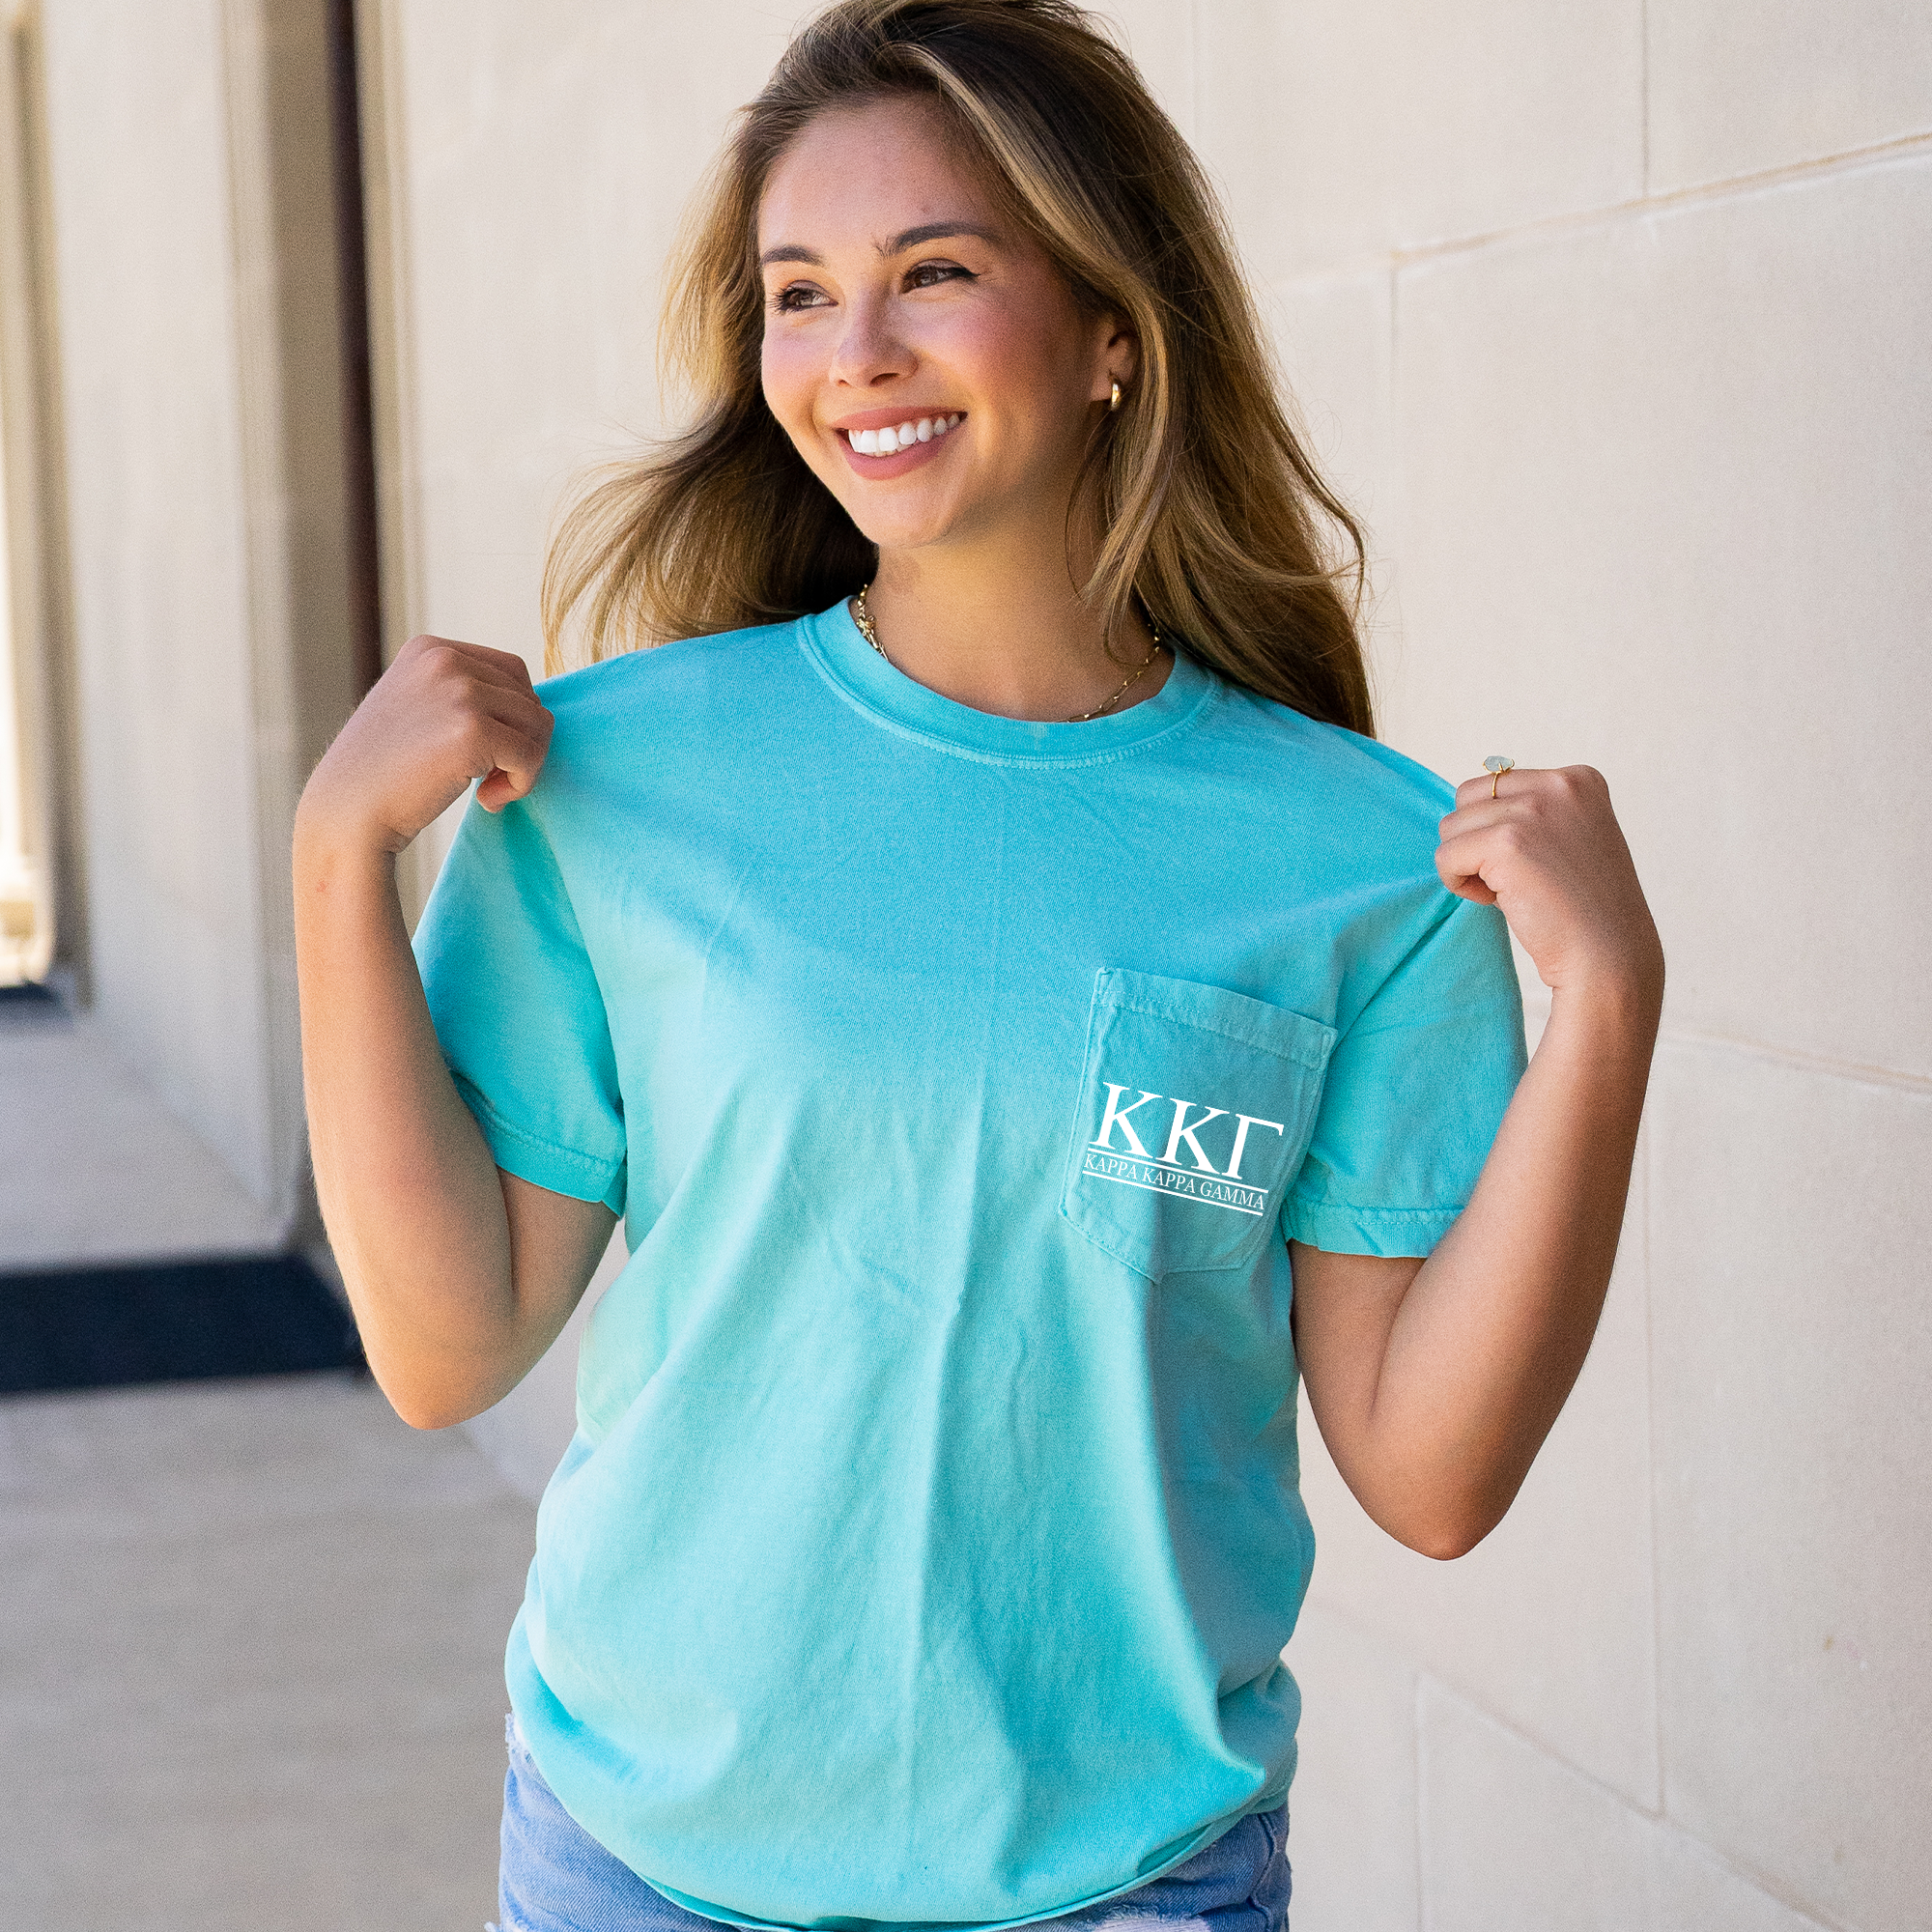 Kappa Kappa Gamma Block Letters T-Shirt - Mint - Go Greek Chic